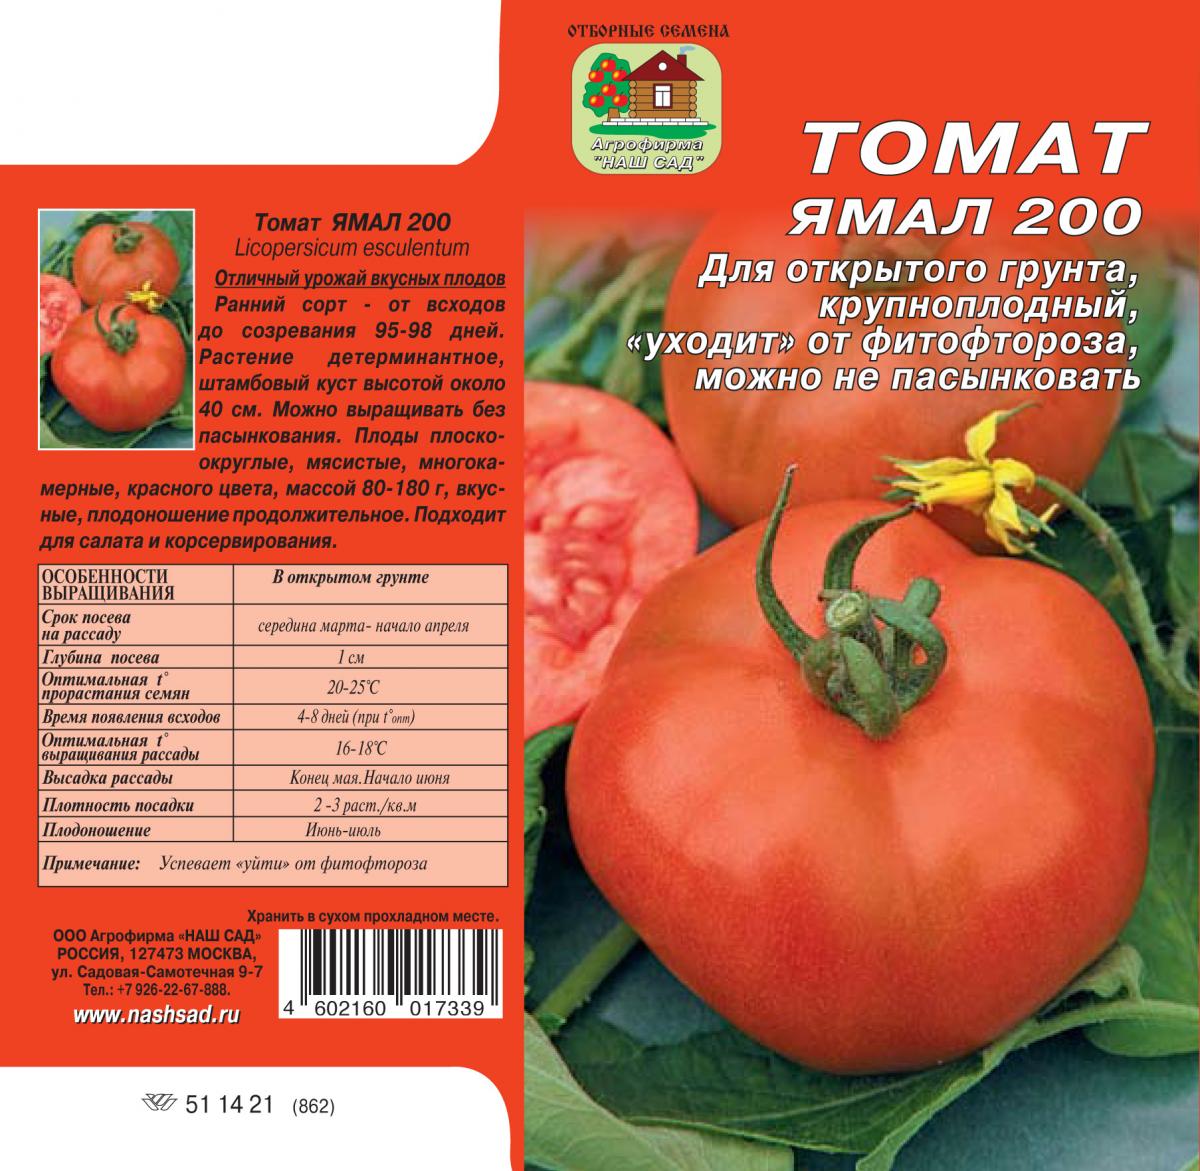 Томат ямал – характеристика и описание сорта, фото, урожайность, сравнение с ямал 200, отзывы